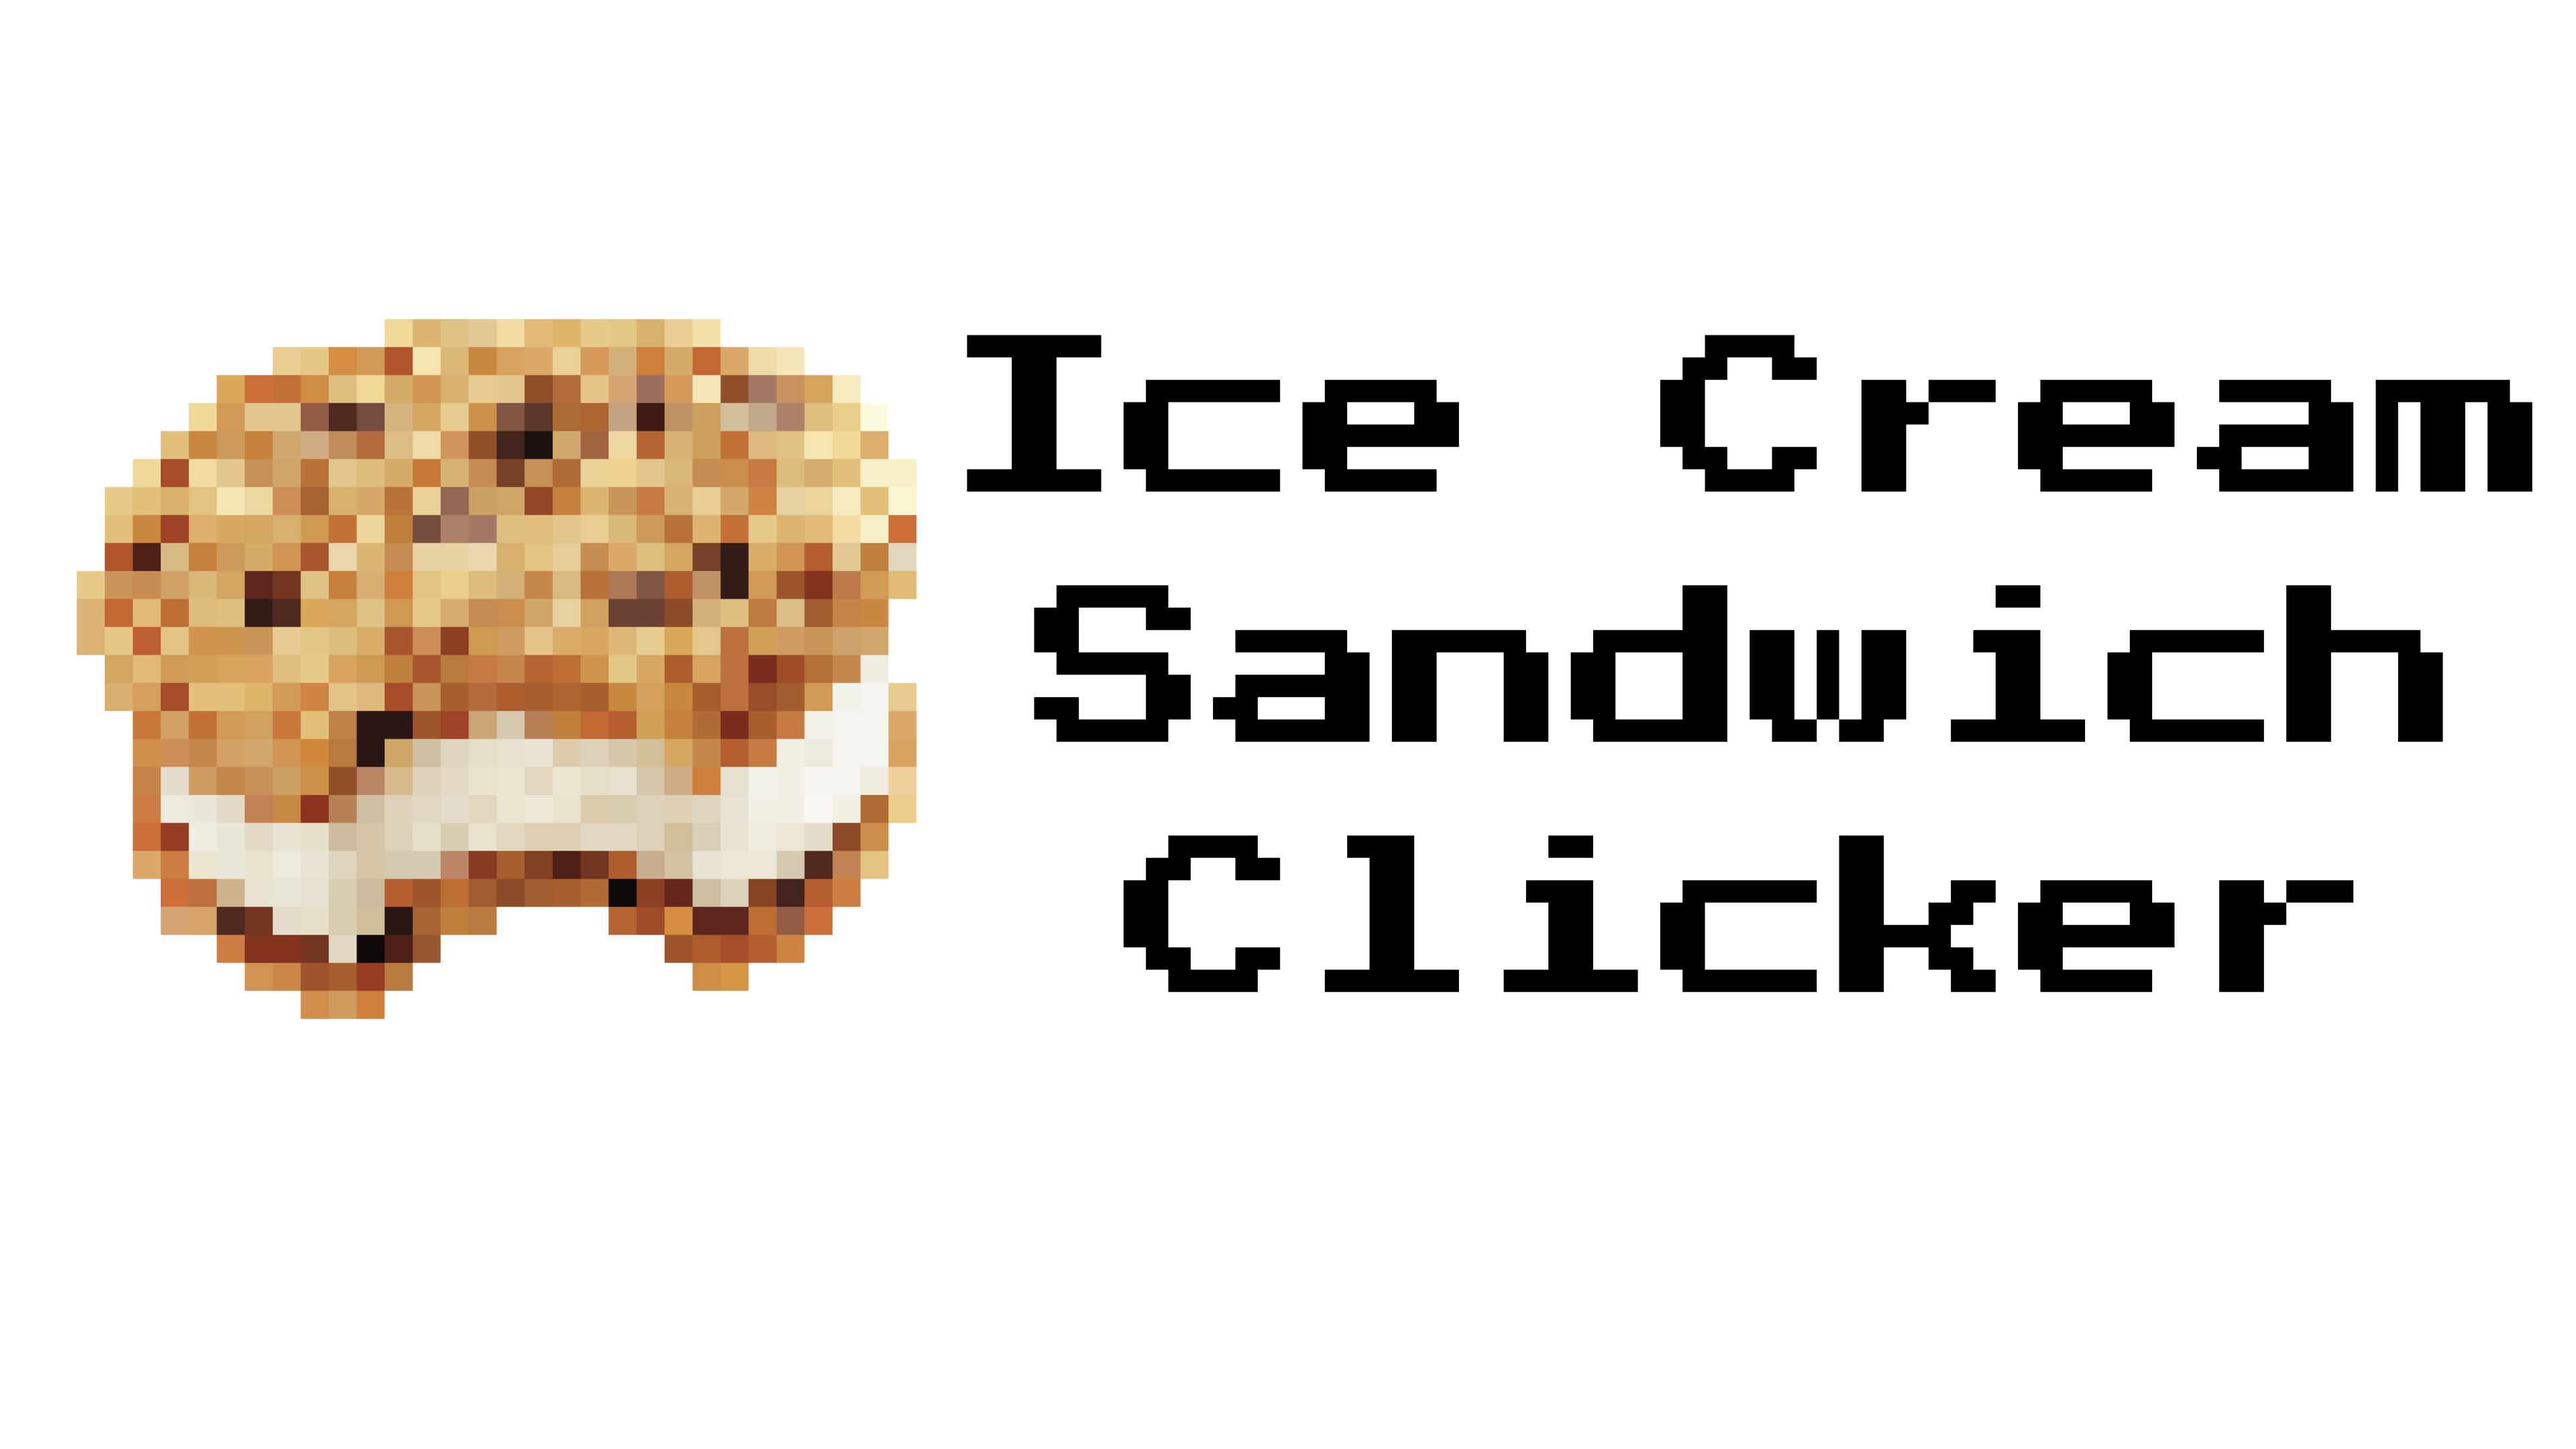 Ice Cream Sandwich Clicker